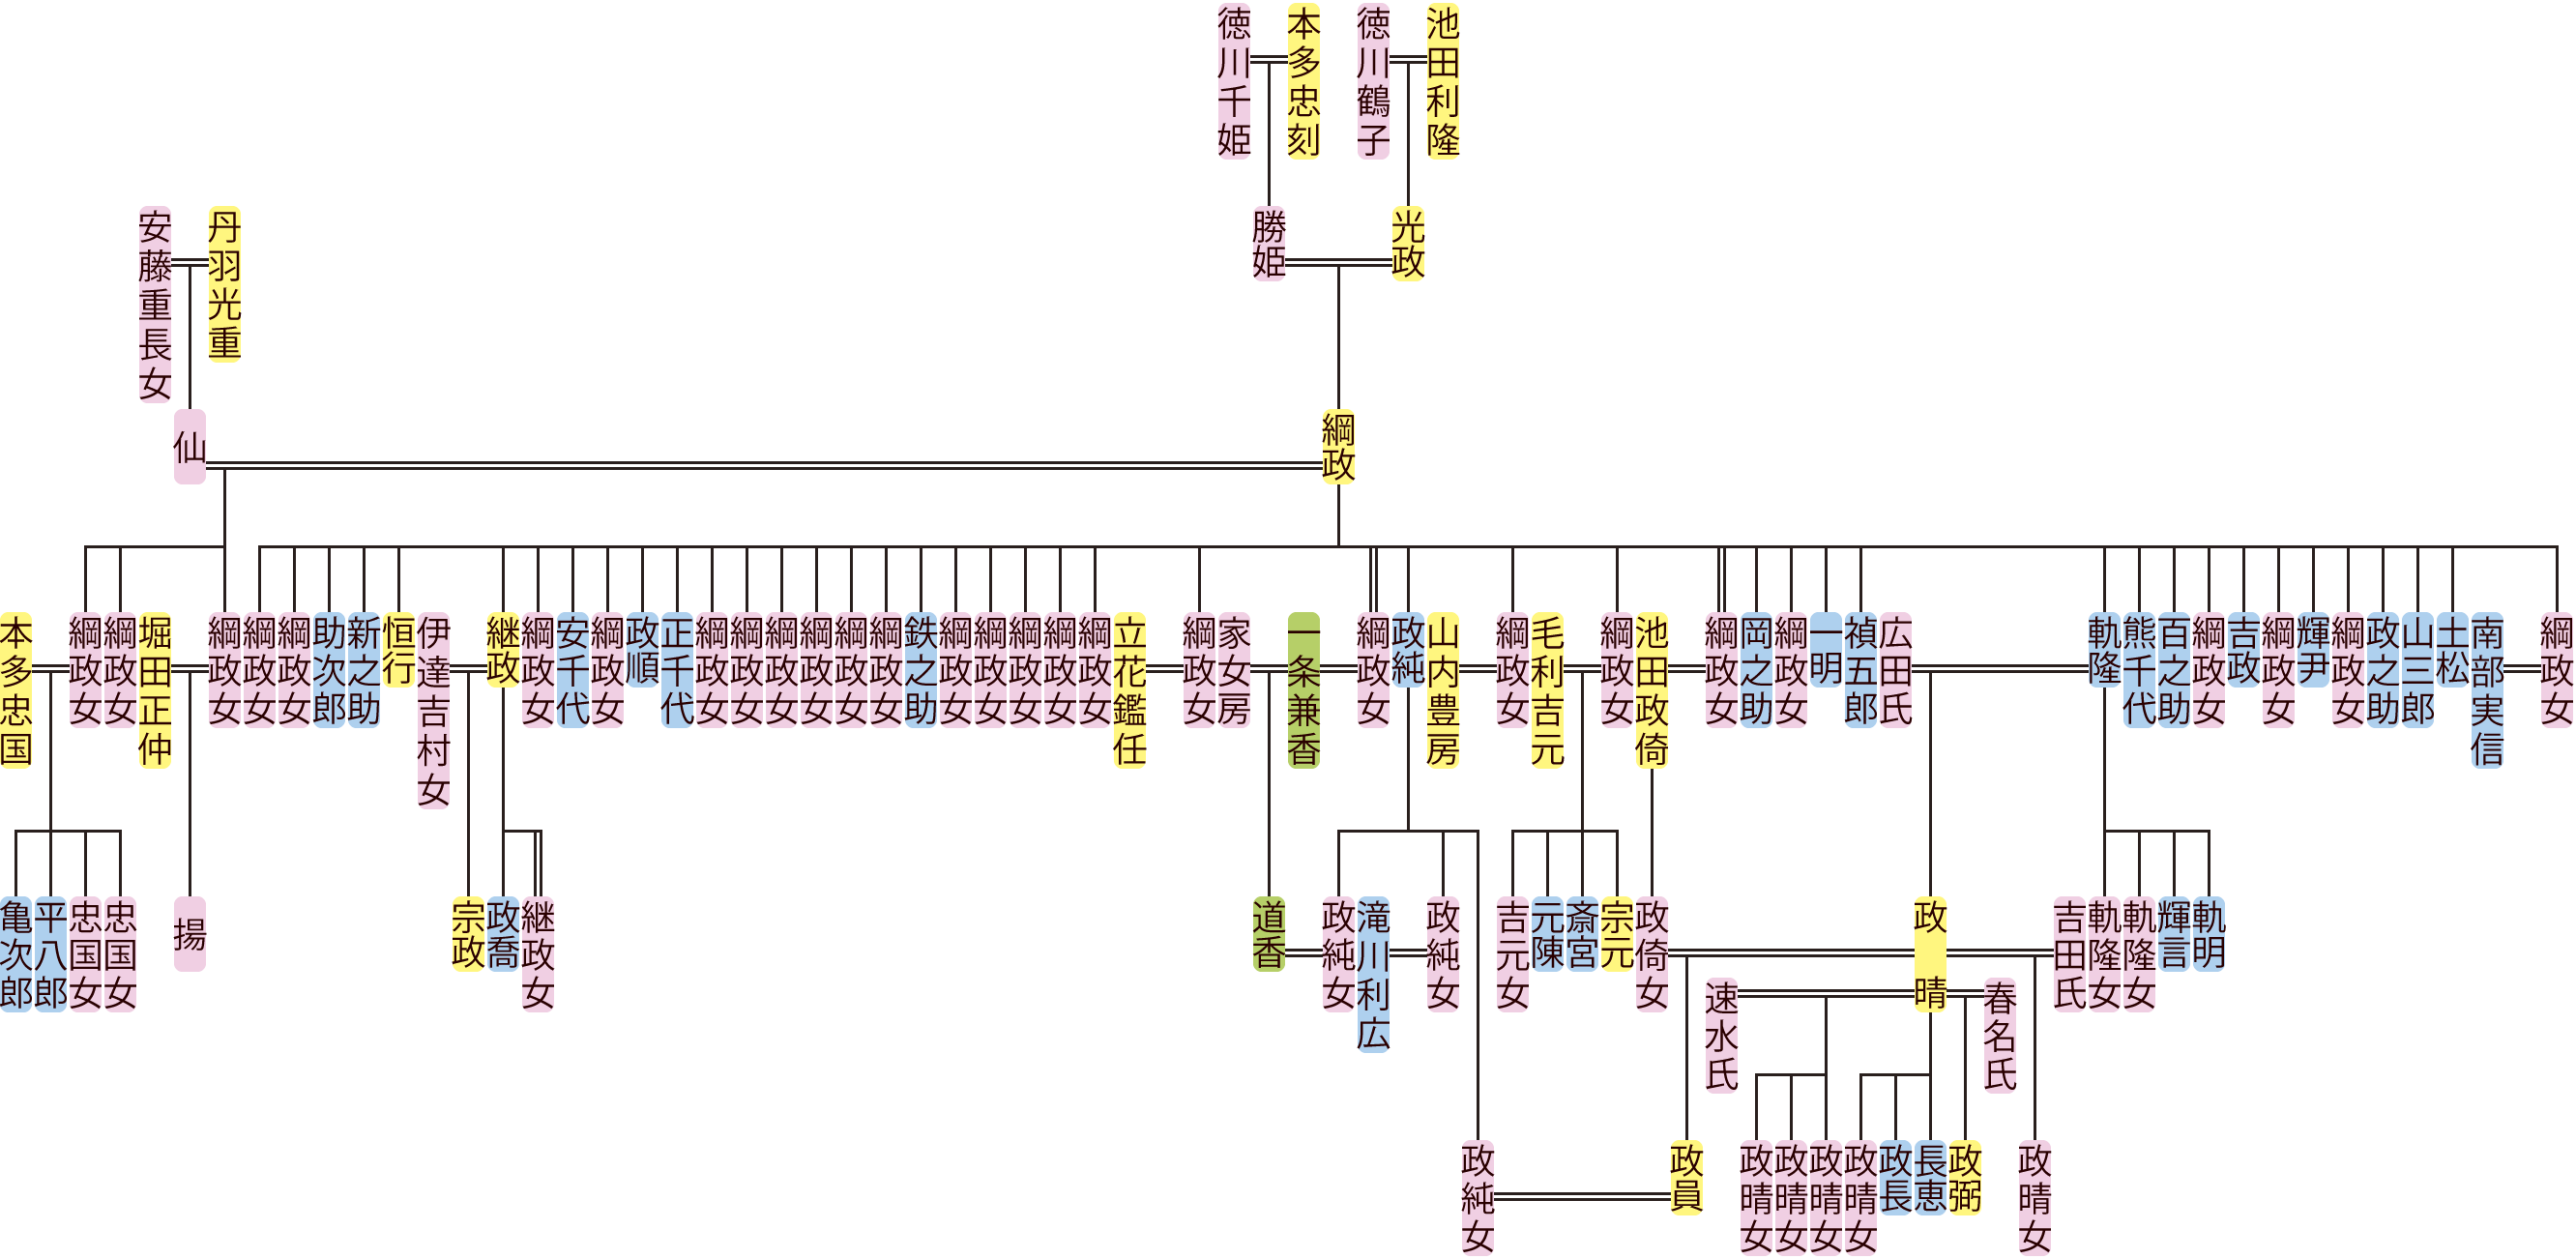 池田輝政の系図